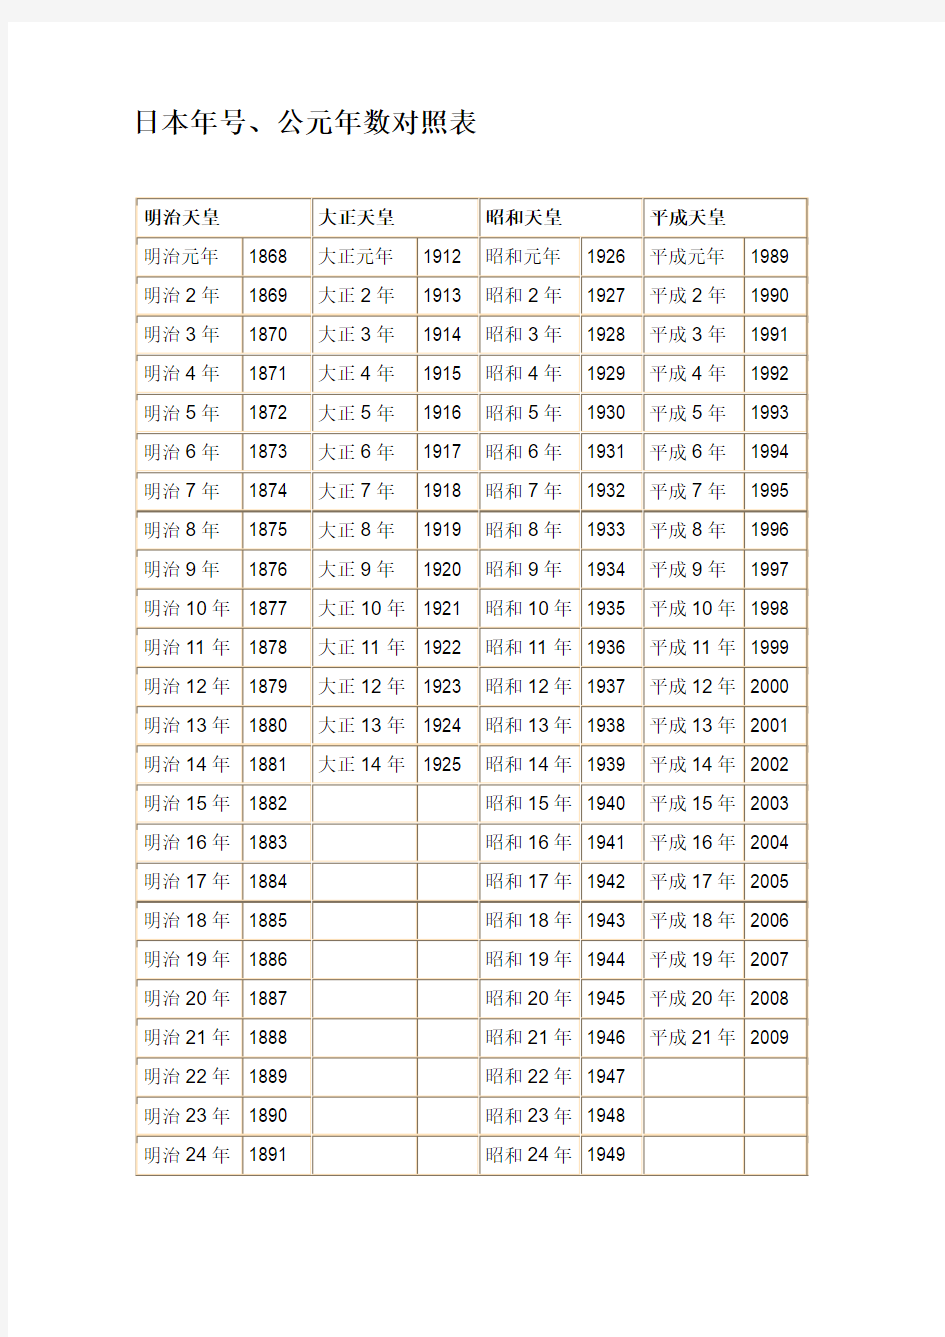 日本年号、公元年数对照表